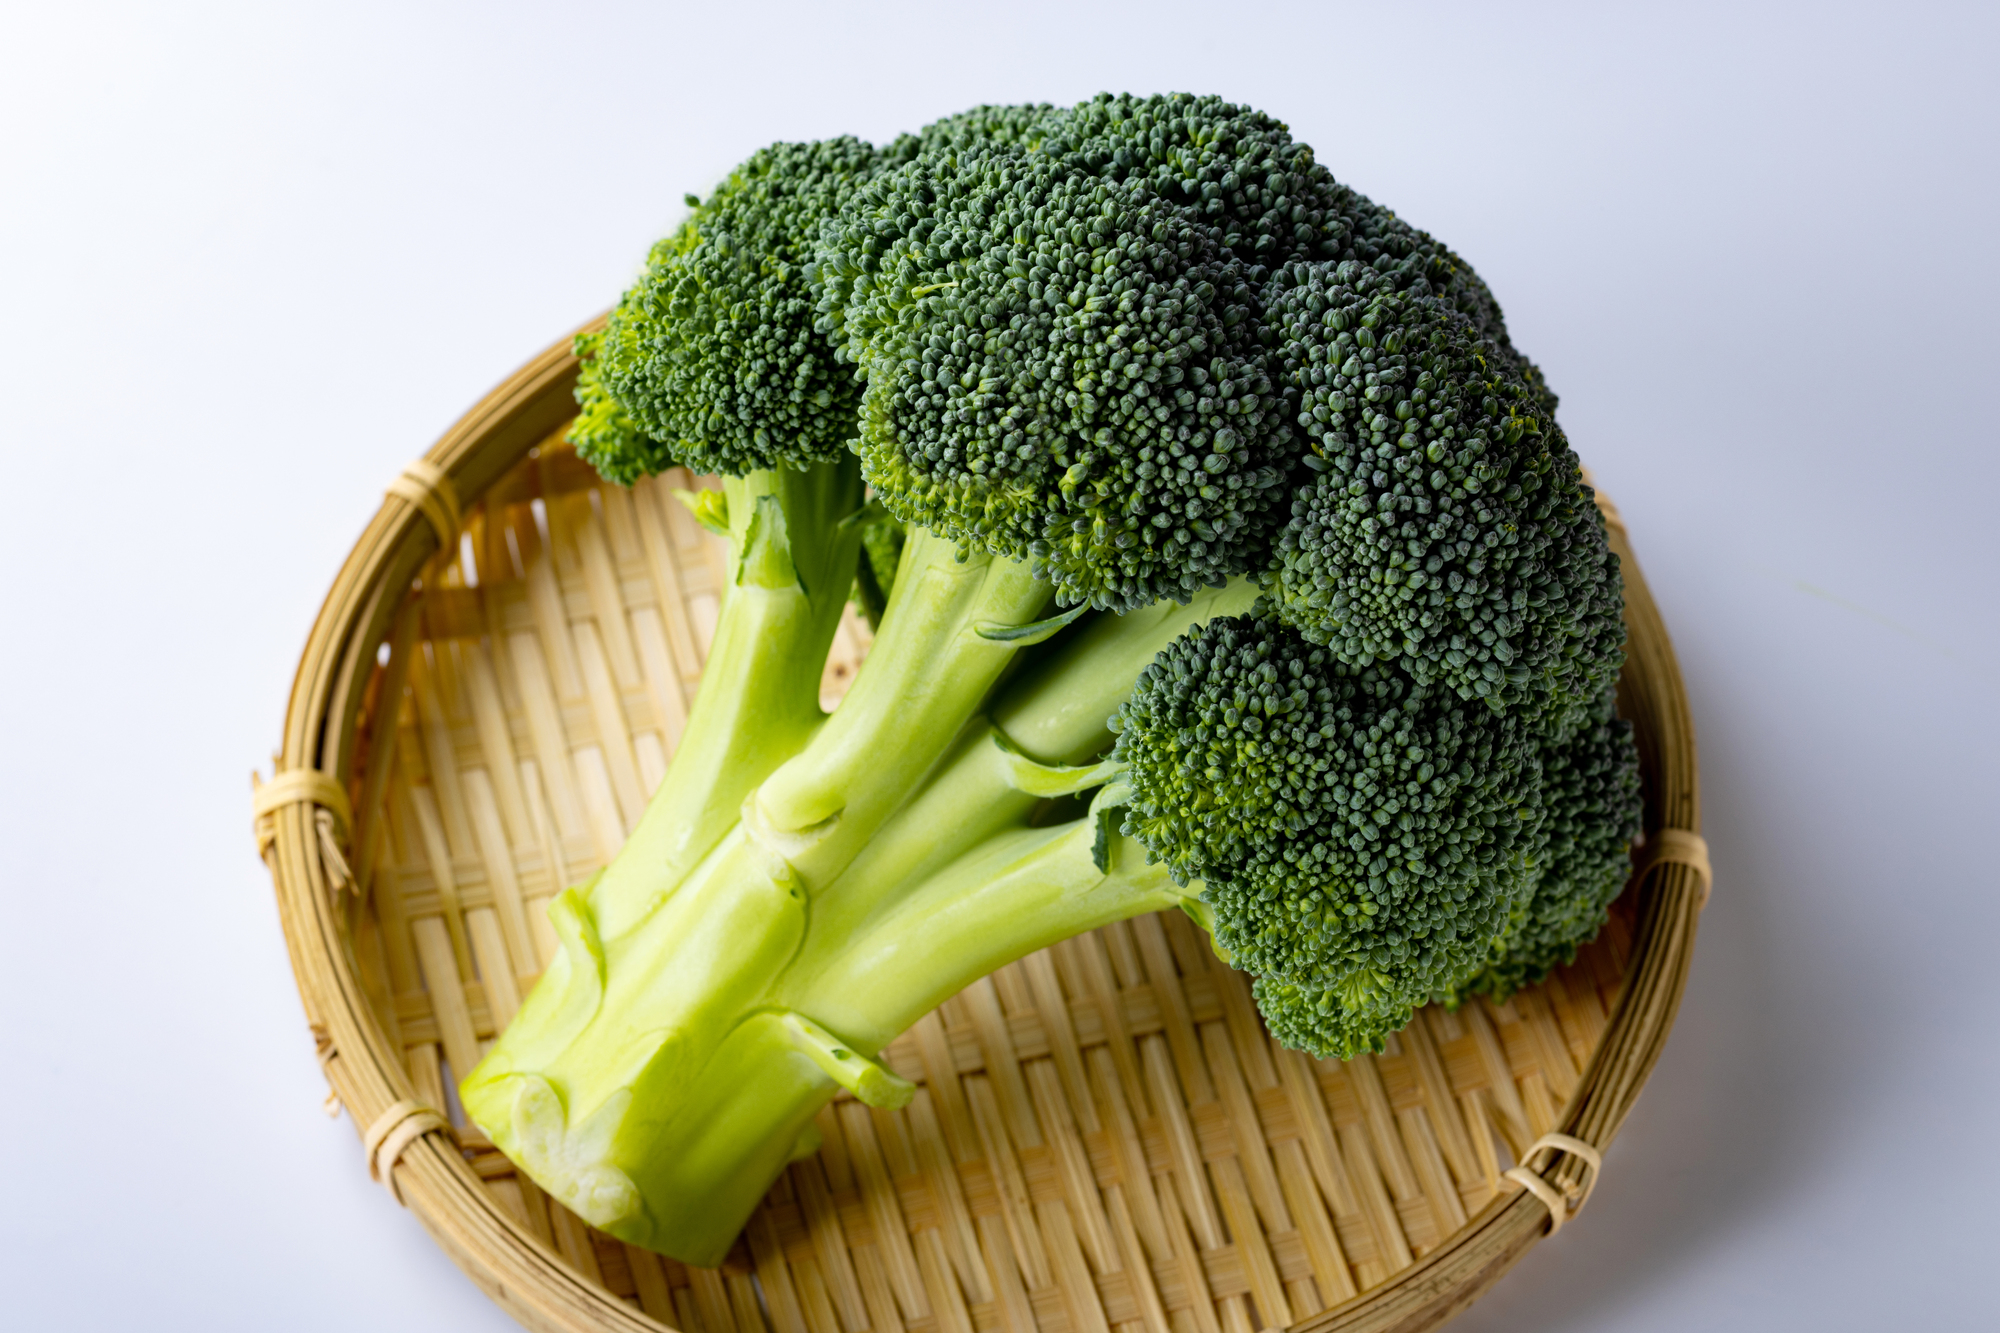 【🥦︎】ブロッコリー「重要な野菜」に昇格…購入量増加、半世紀ぶり指定野菜に